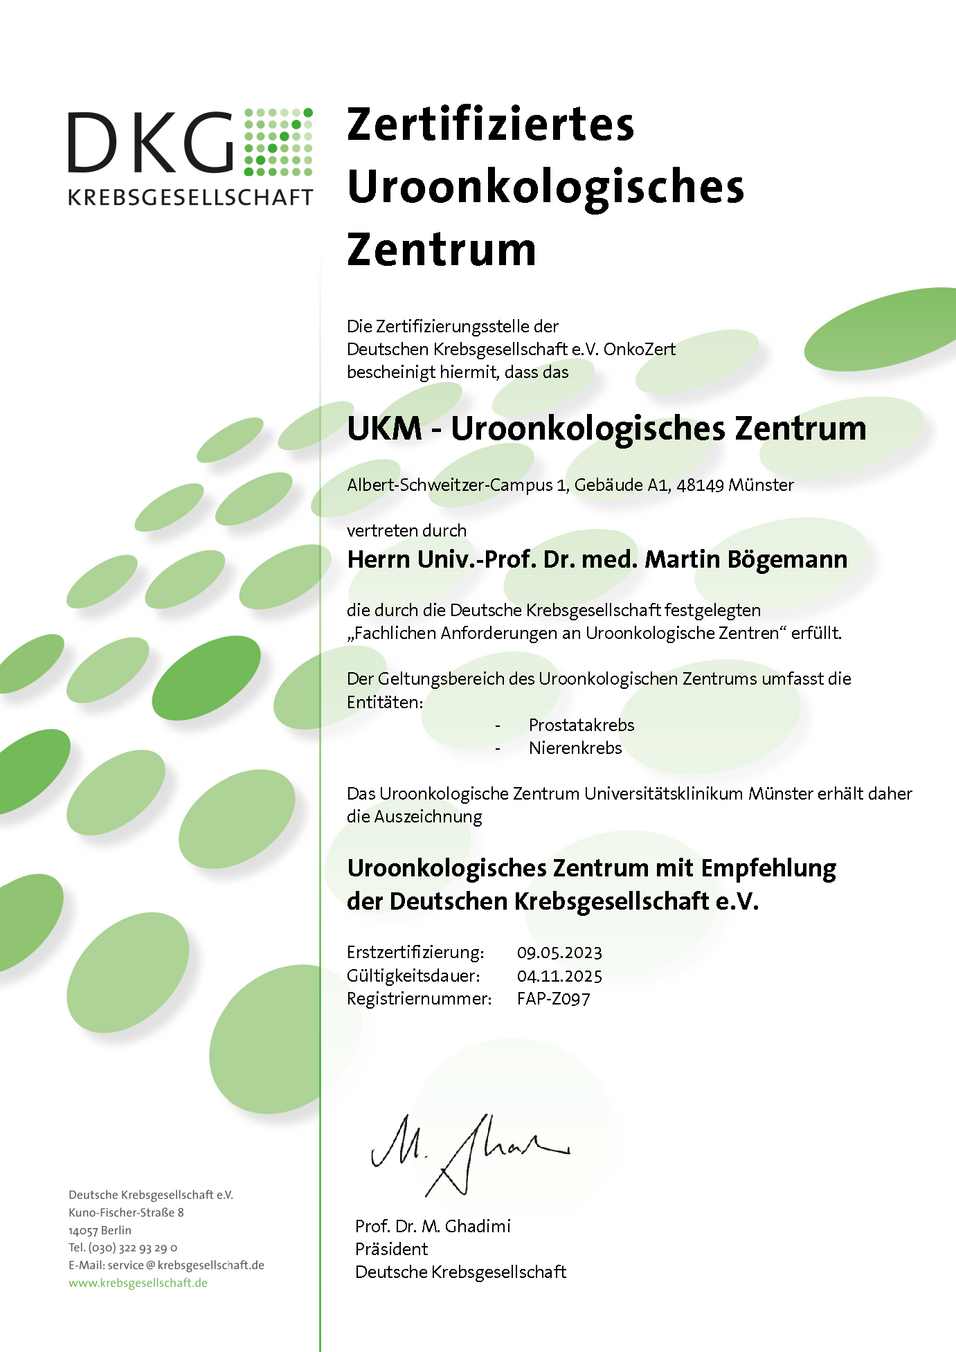 UKM Uroonkologisches Zentrum | Zertifizierung